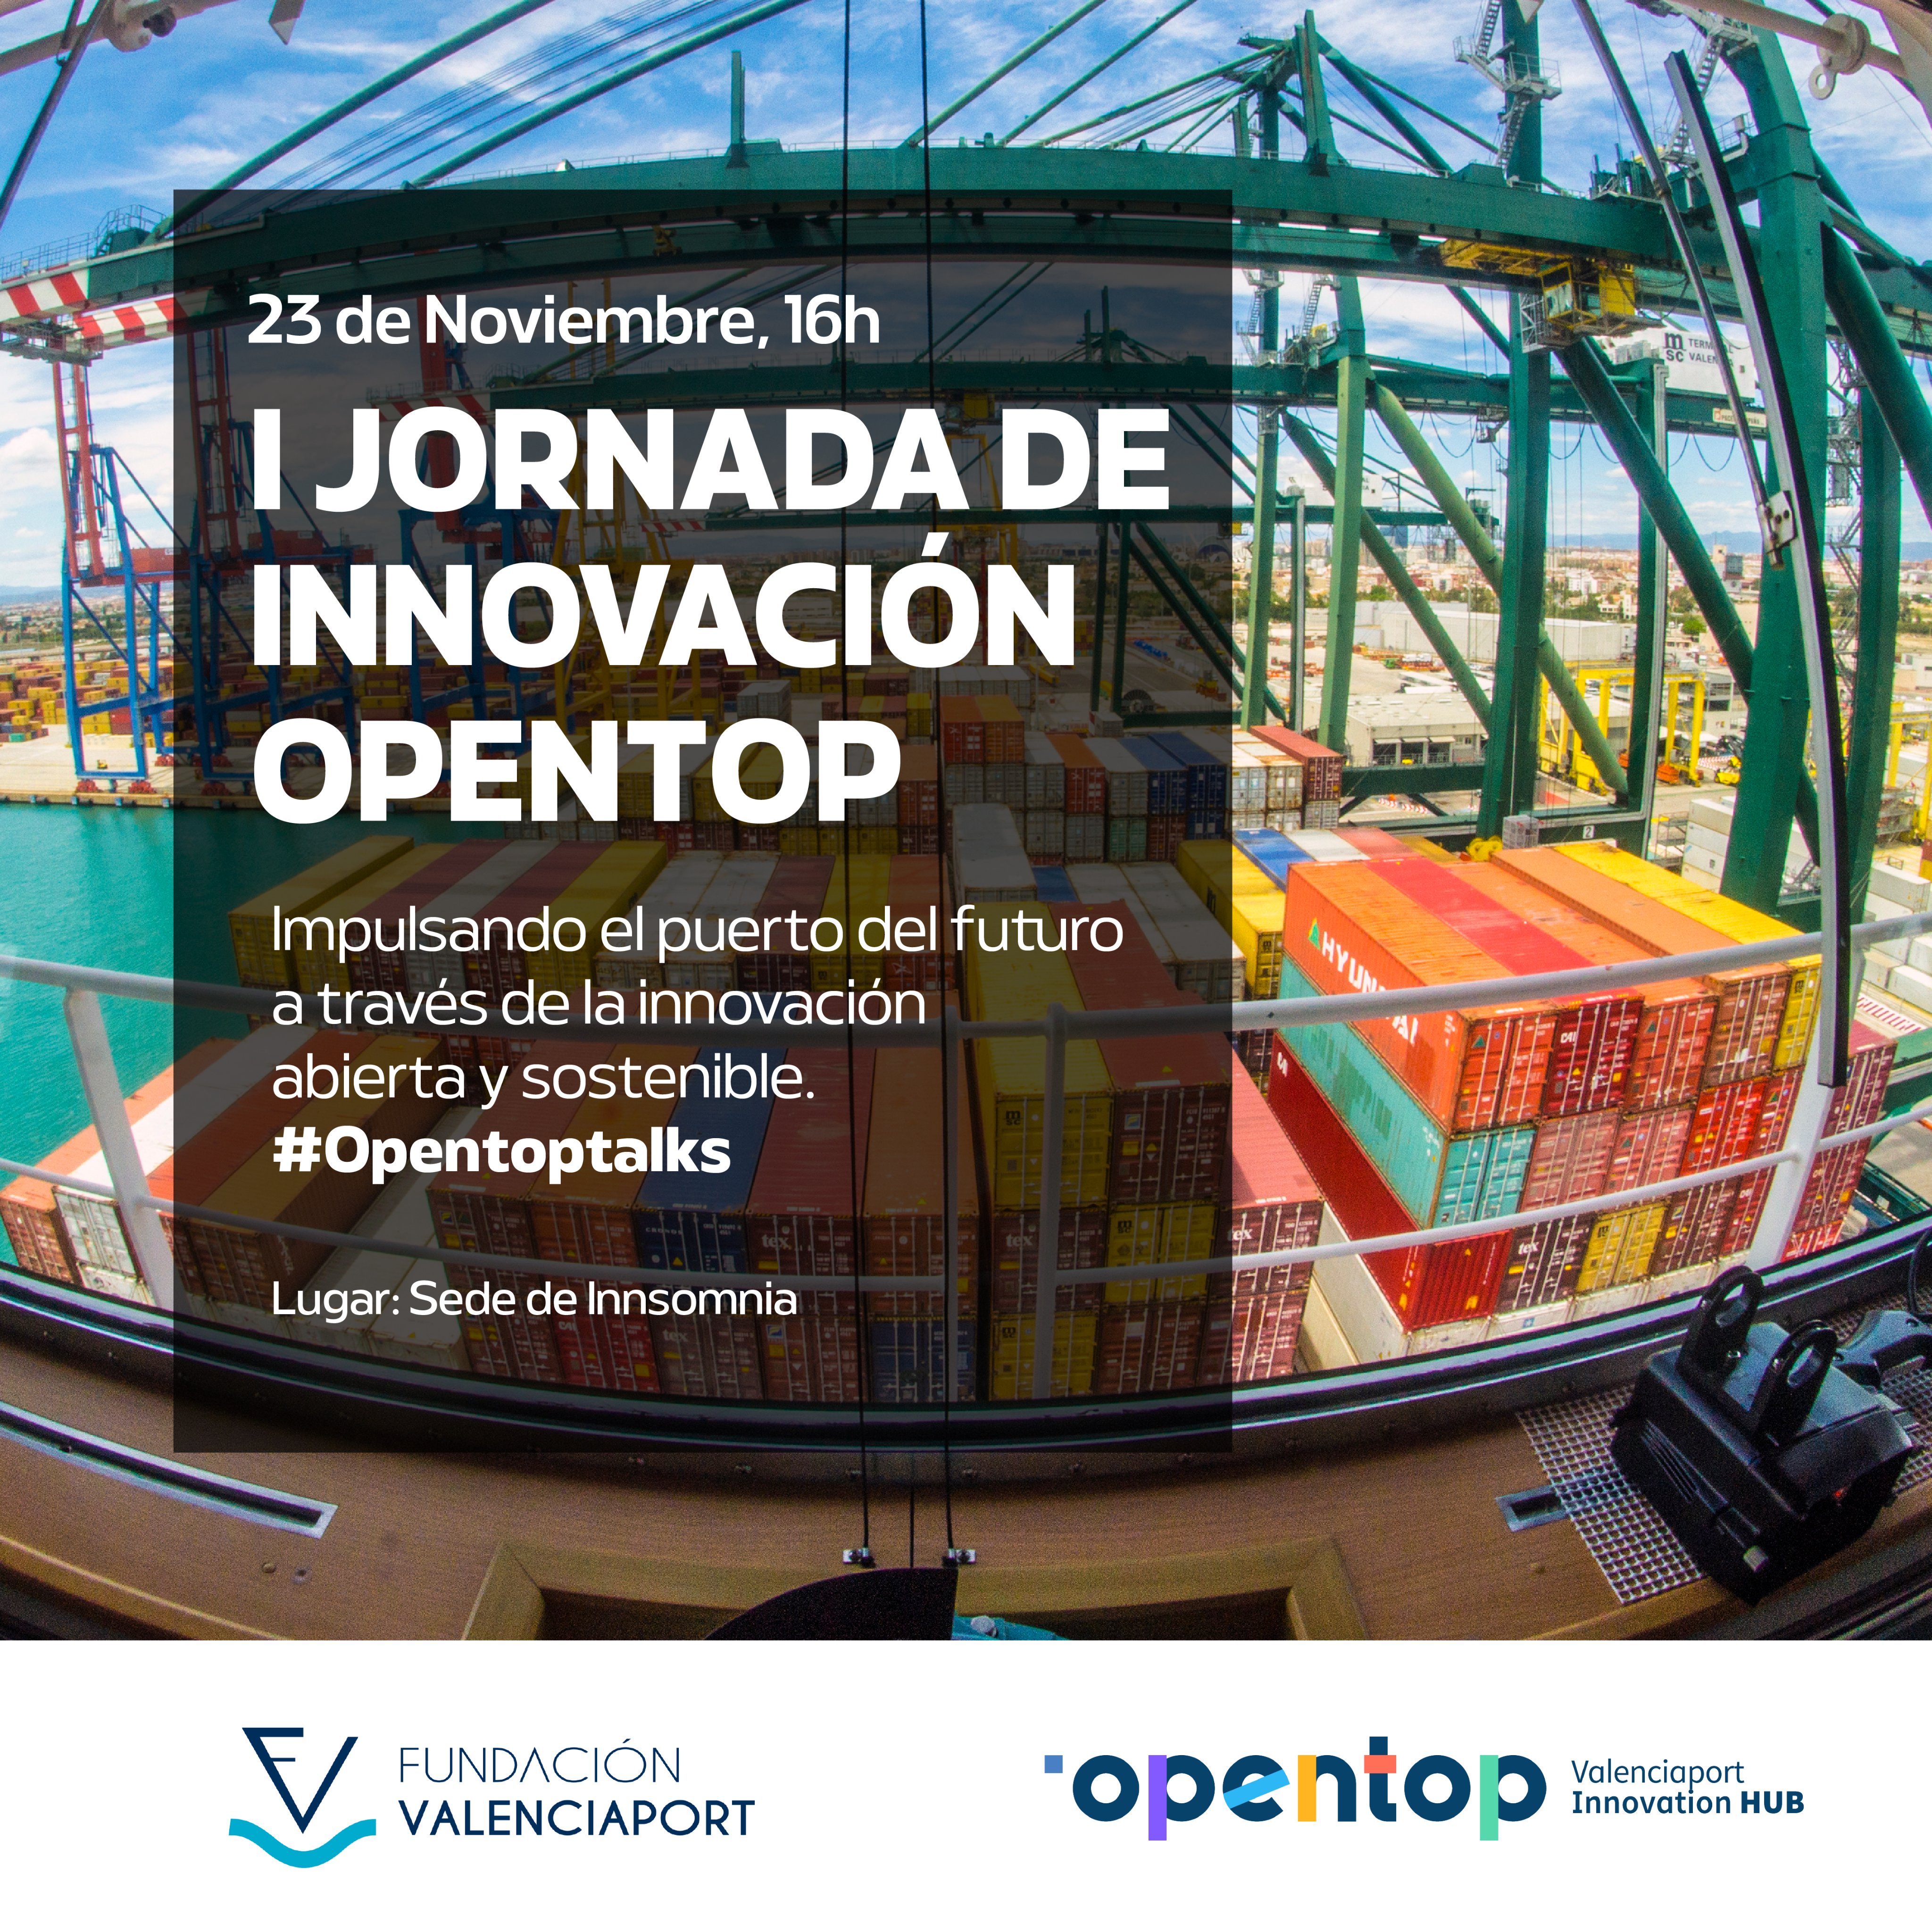 Barbero Presentar Atticus FValenciaport on Twitter: "💥¡Atención!💥@Opentop_Hub celebrará el próximo  23 de noviembre la I Jornada de #Innovación Opentop: "Impulsando el puerto  del futuro a través de la innovación abierta y sostenible", en la sede